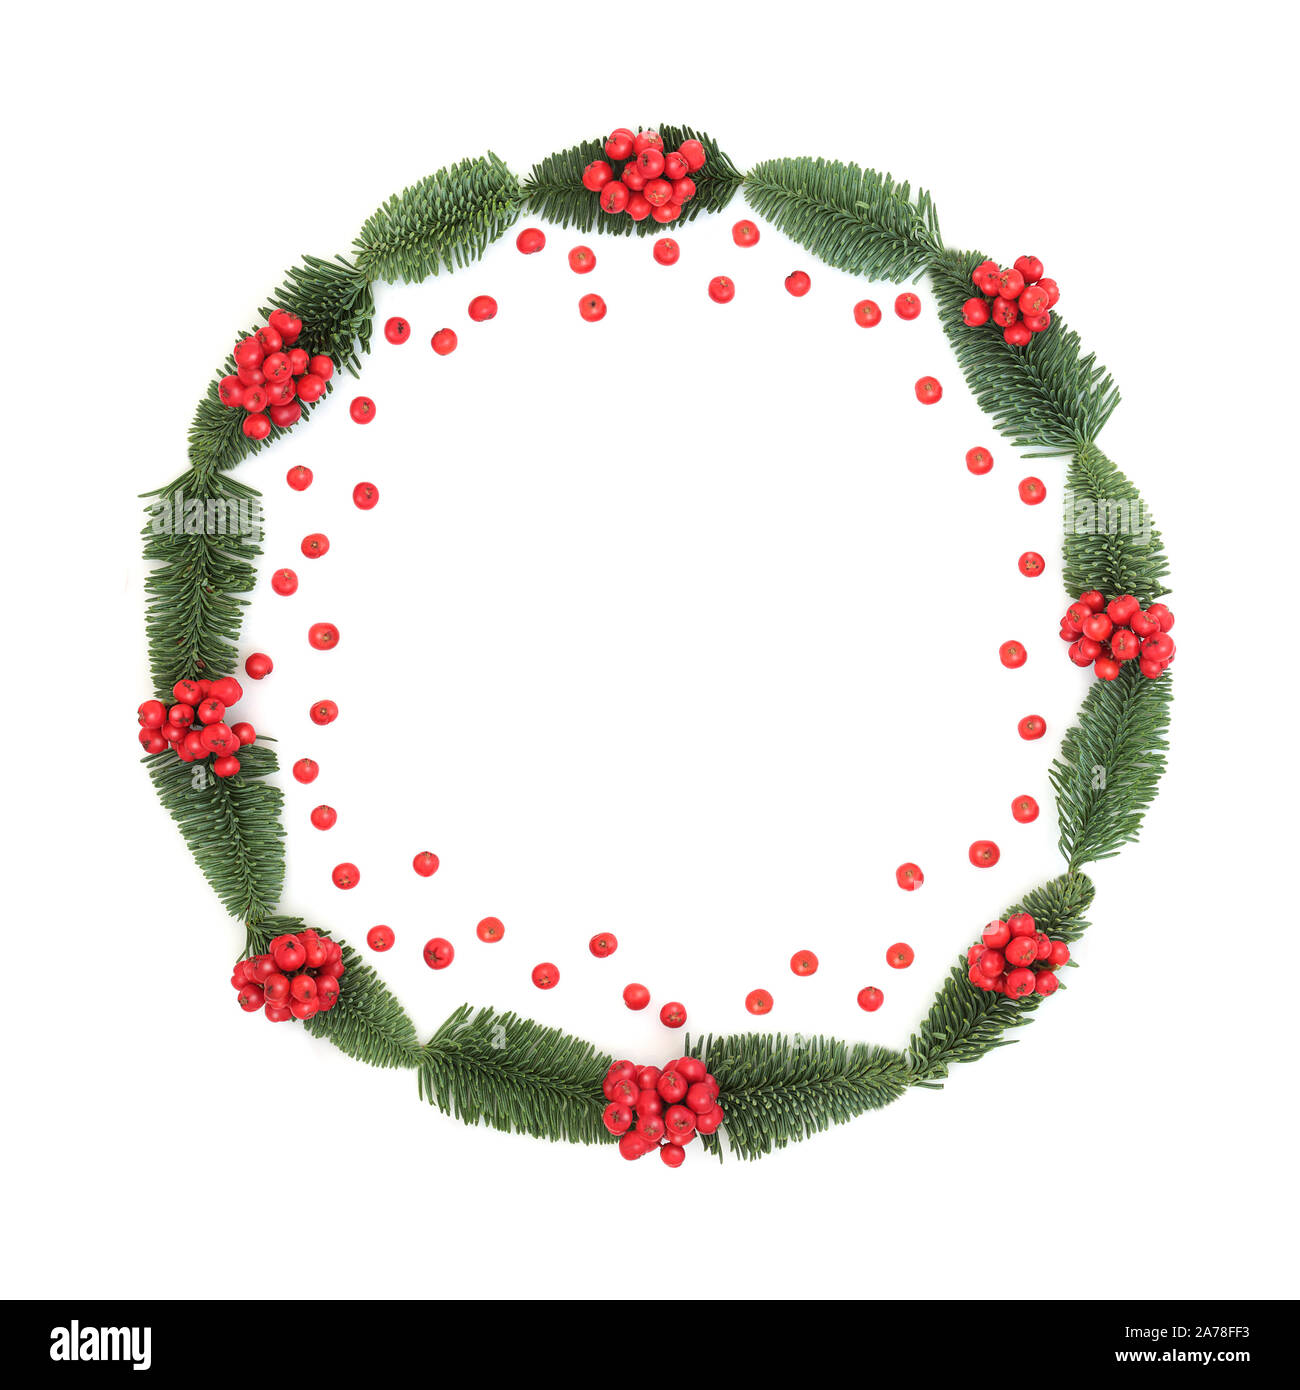 L'hiver et Noël holly berry et epicea sapin couronne, avec des fruits rouges sur fond blanc. Symbole traditionnel pour les fêtes. Banque D'Images